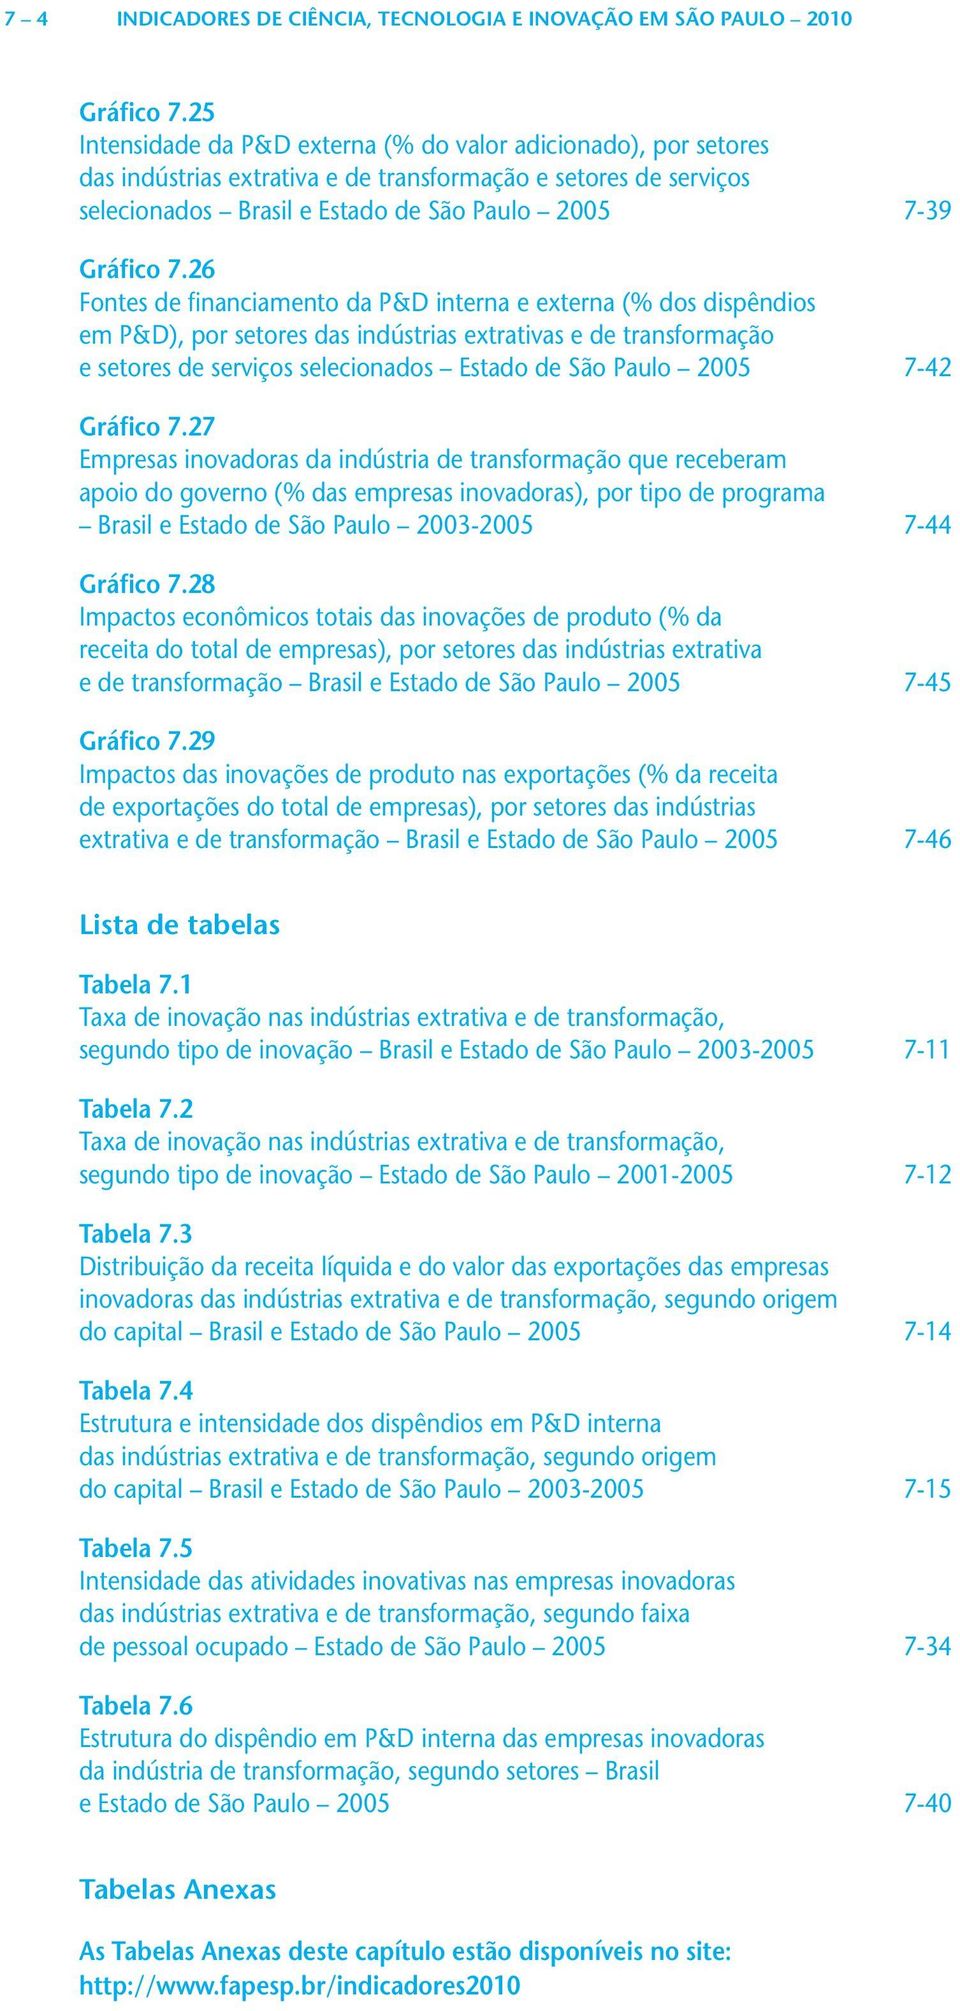 26 Fontes de financiamento da P&D interna e externa ( dos dispêndios em P&D), por setores das indústrias extrativas e de transformação e setores de serviços selecionados Estado de São Paulo 2005 7-42